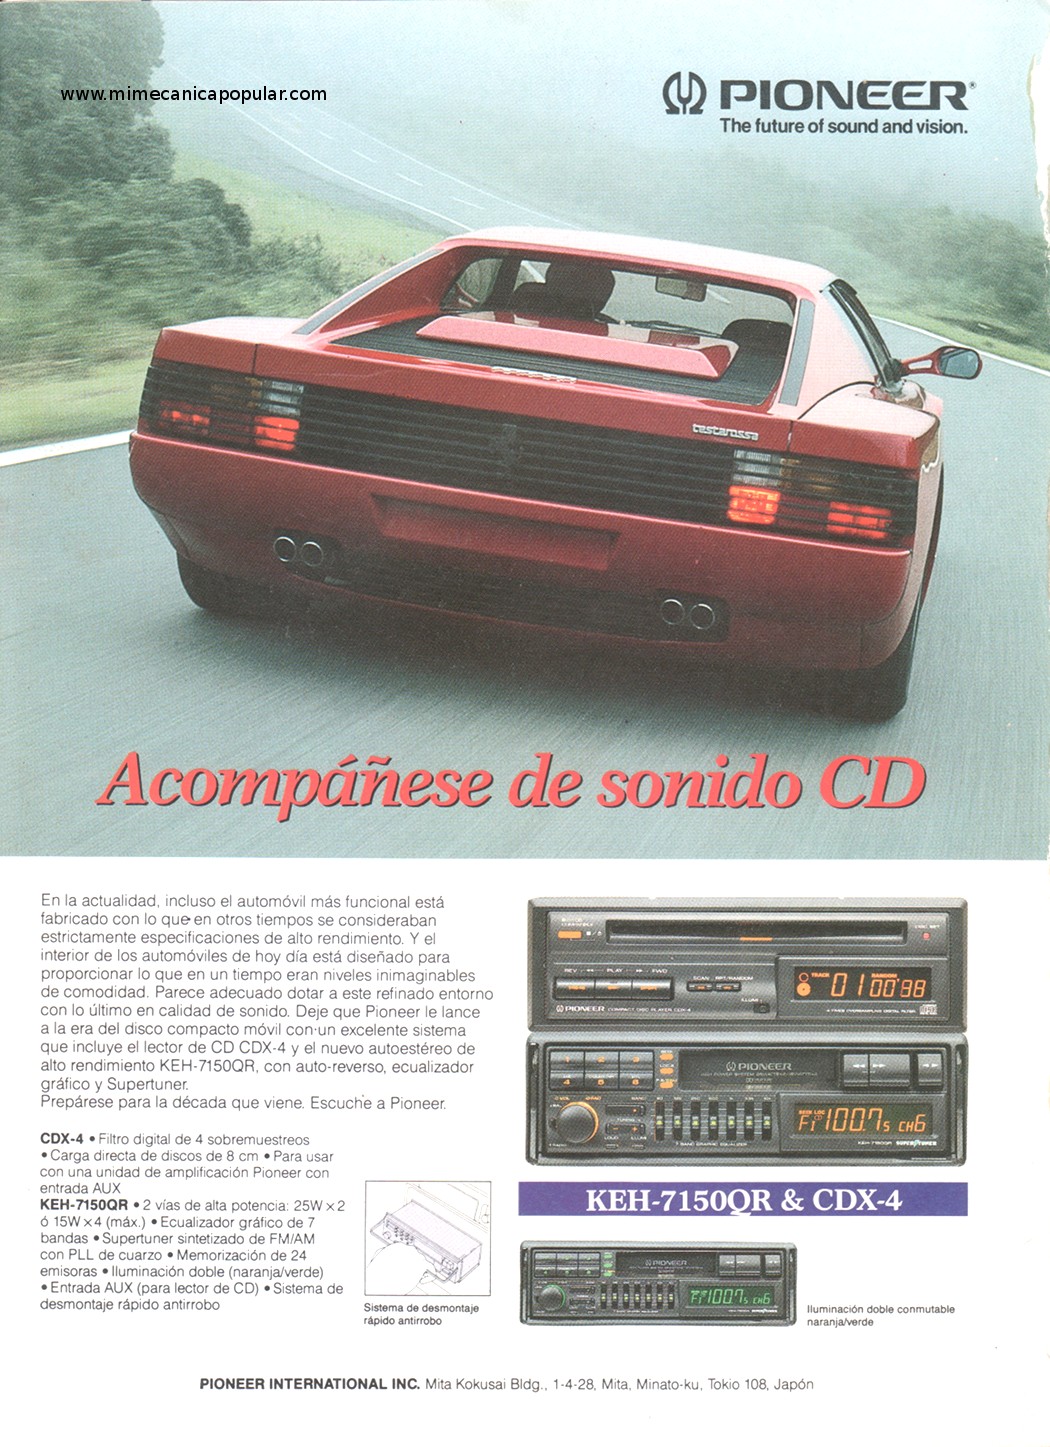 Publicidad - Autoestéreo Pioneer - Mayo 1991